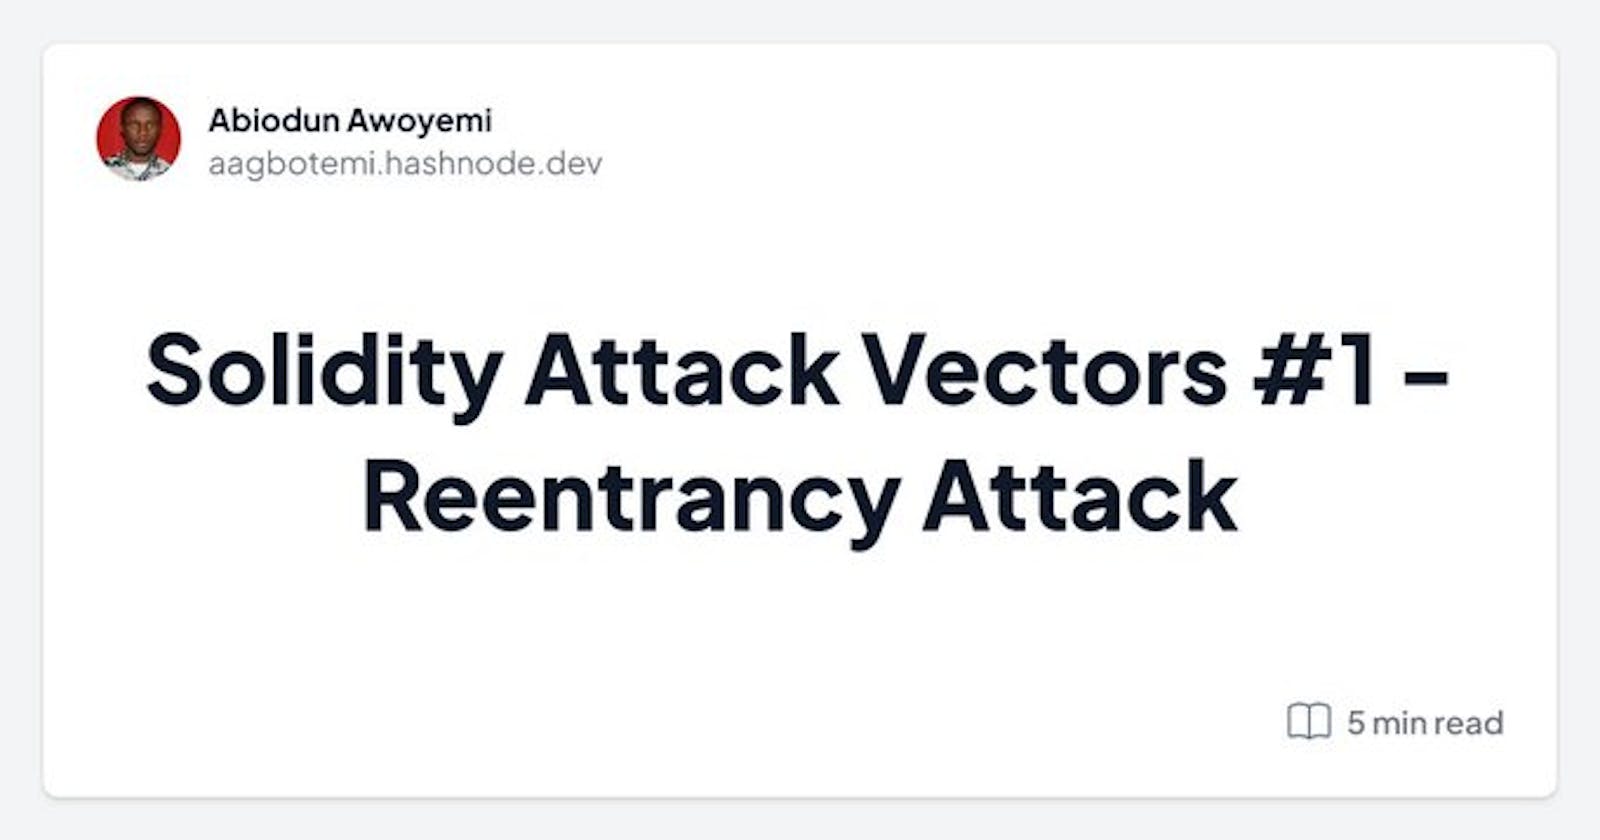 Solidity Attack Vectors #1 - Reentrancy Attack